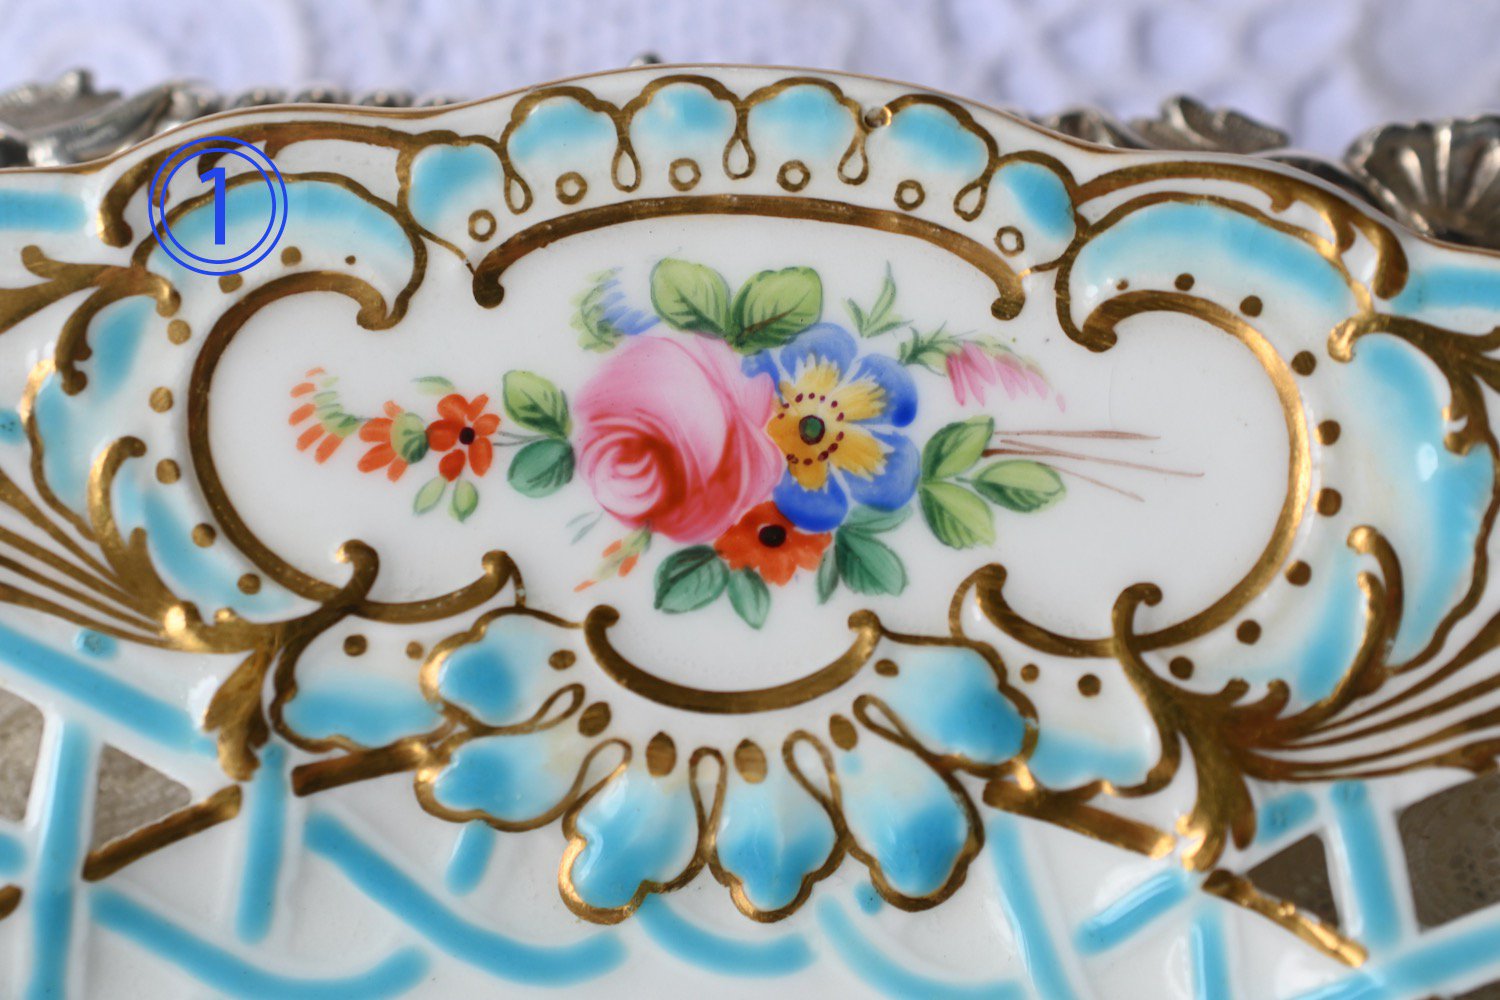 ミントン　ヴィクトリア時代・透かし細工ミントンブルーと手描きの鮮やかなお花模様のキャビネットプレートをイギリス　コッツウォルズよりお届けいたします。